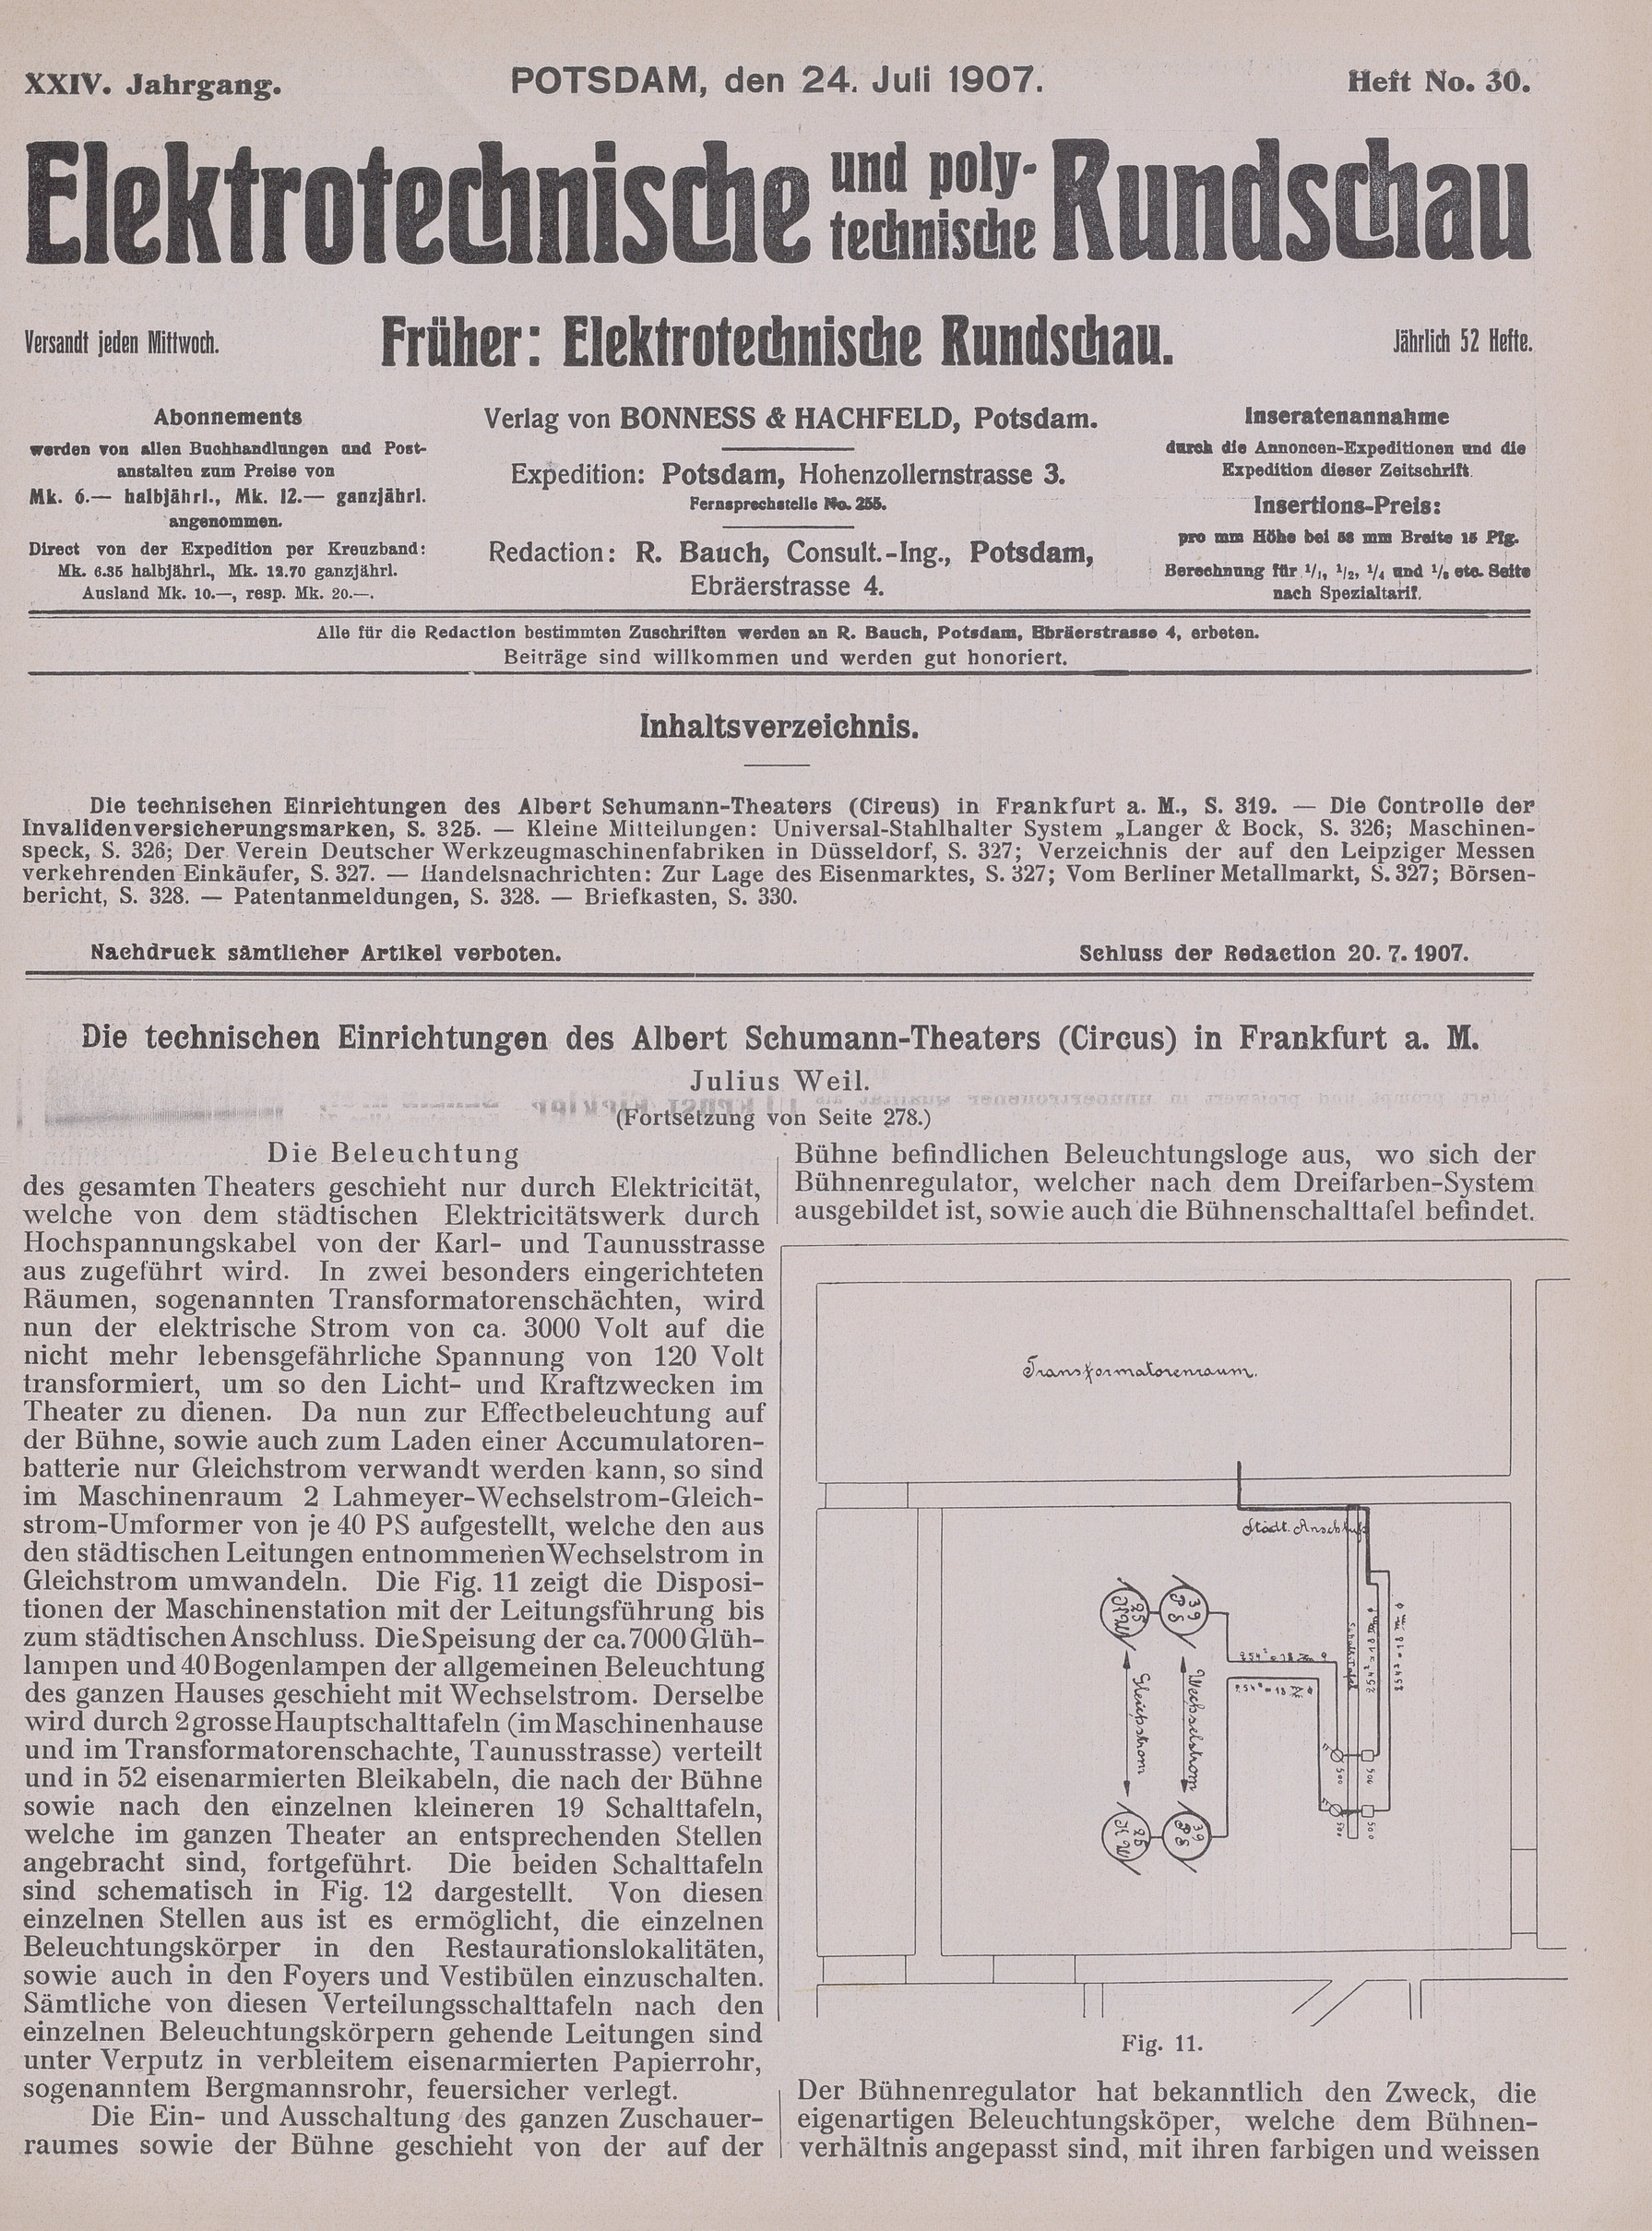 Elektrotechnische und polytechnische Rundschau, XXIV. Jahrgang, Heft No. 30